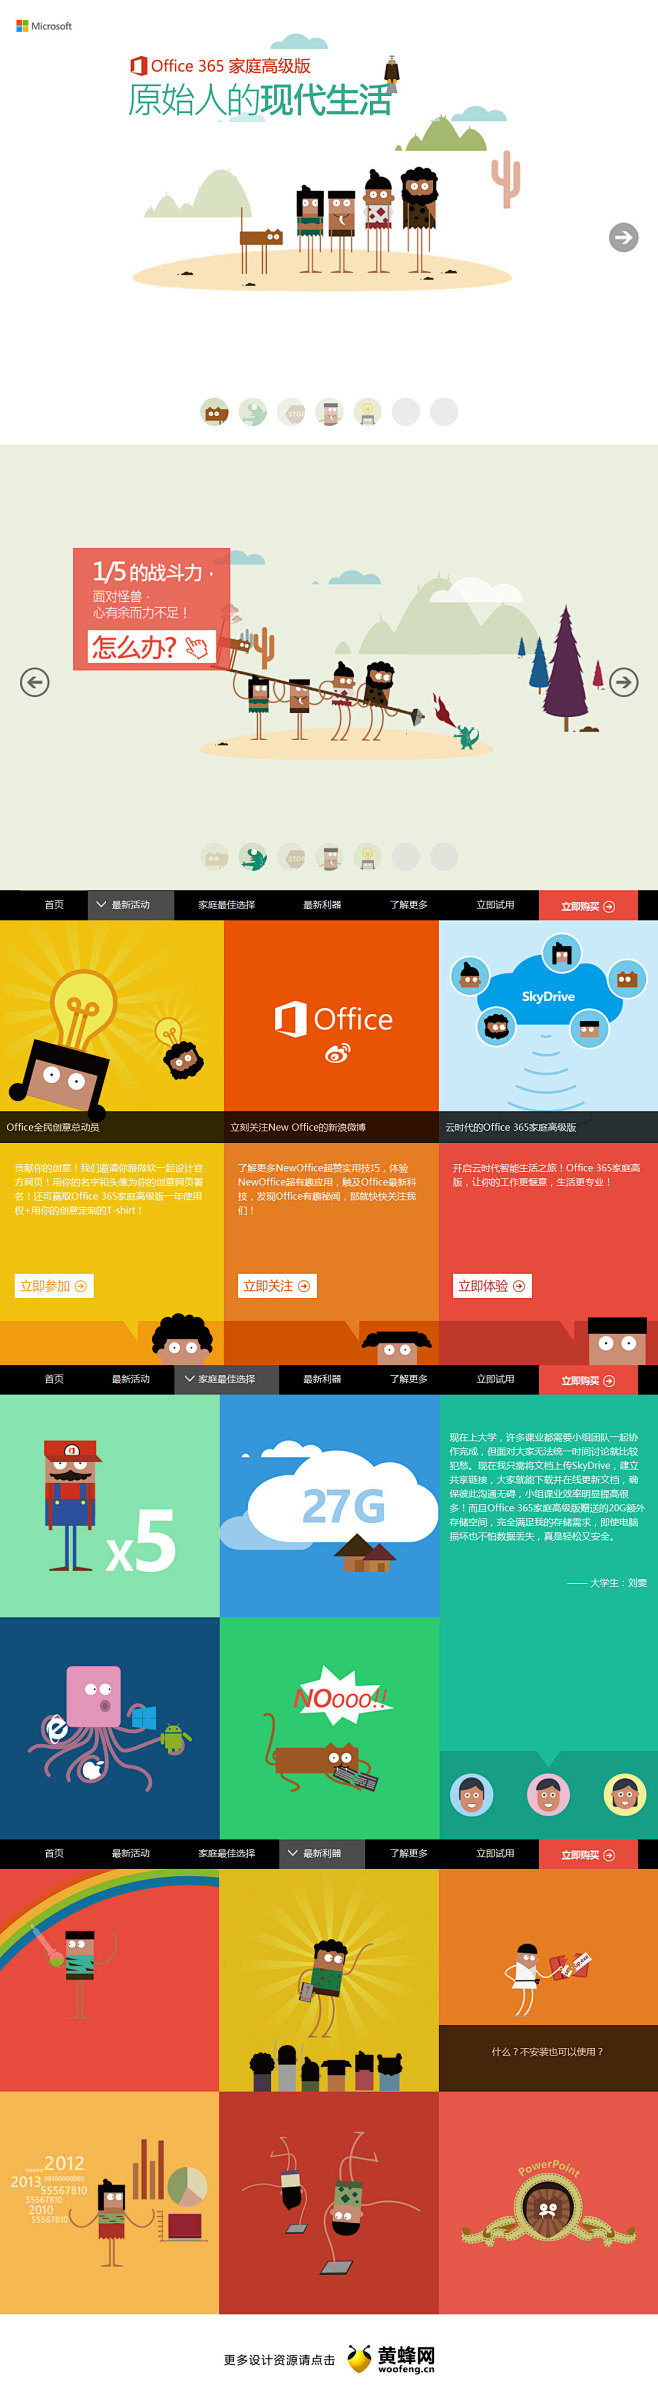 Office 365家庭高级版 - 网页...